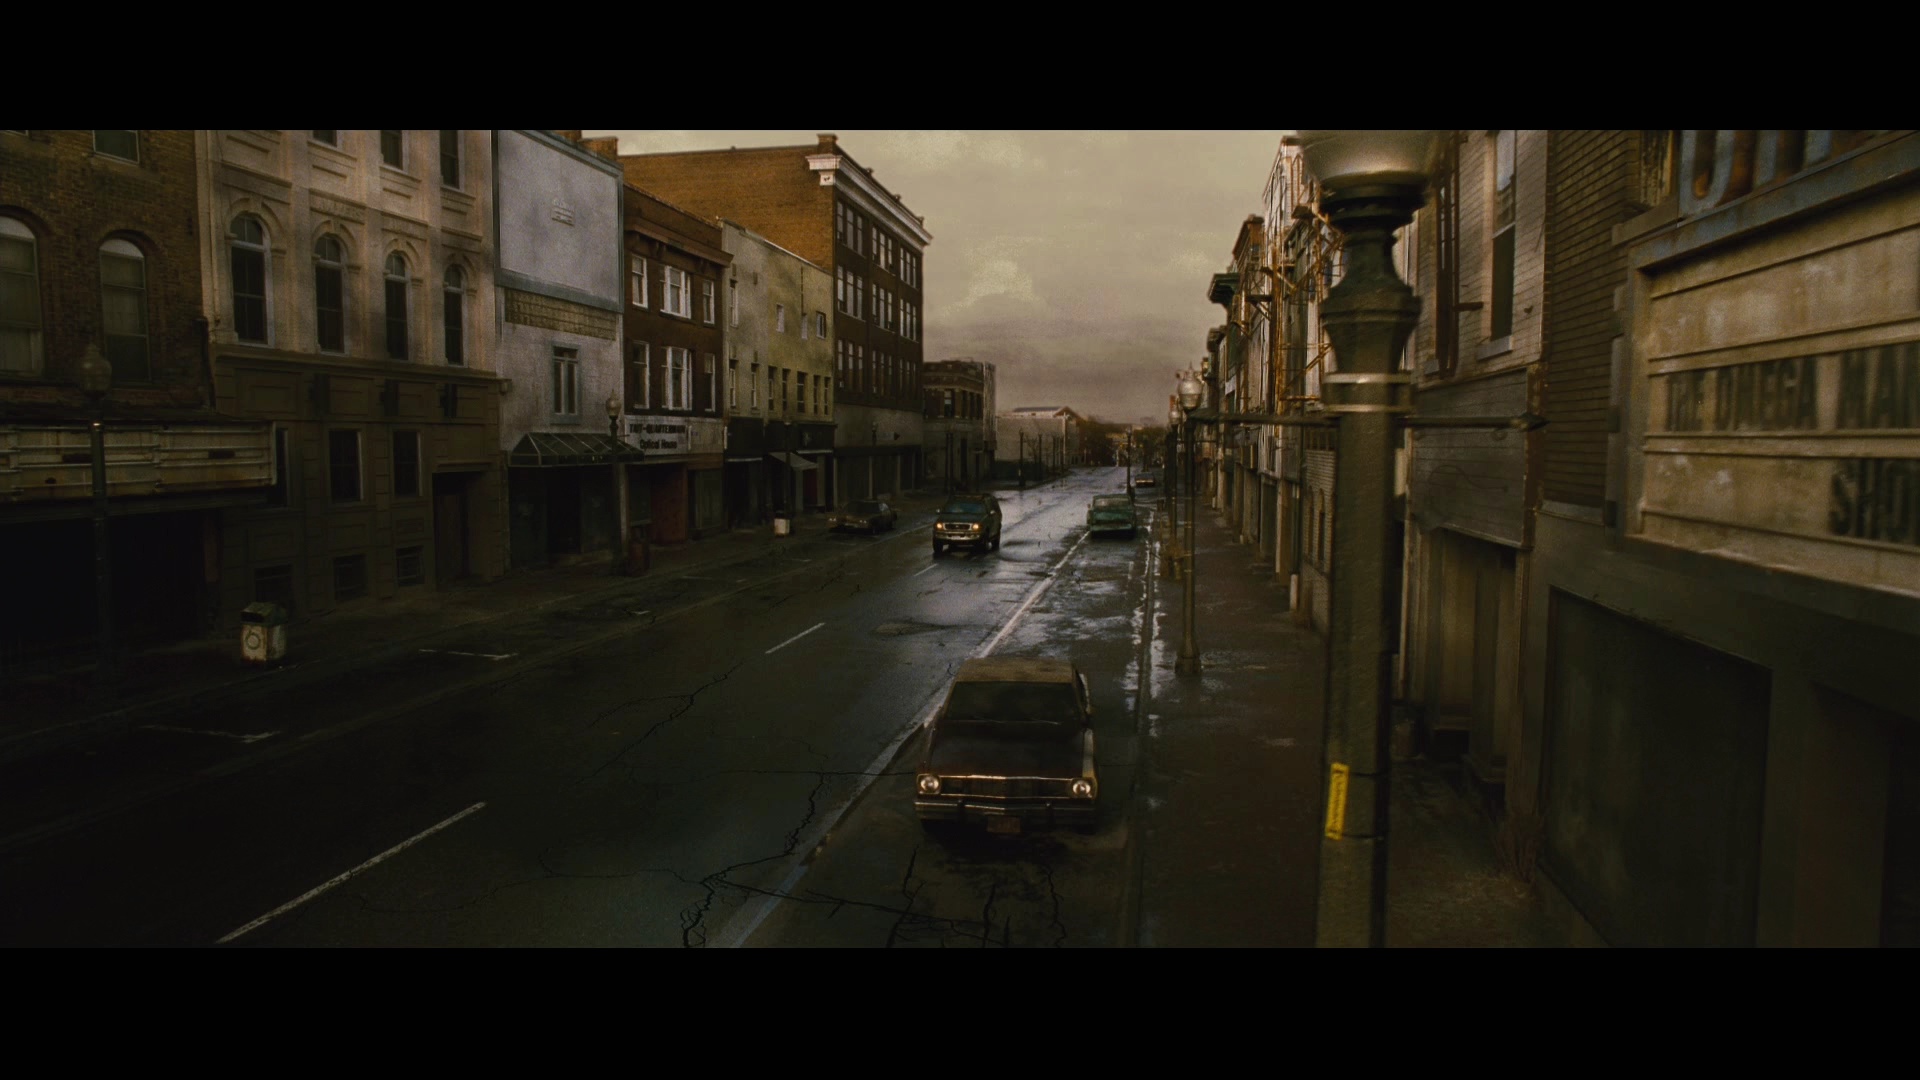 Silent Hill Film Screen Shot 19.01.14 23. 31